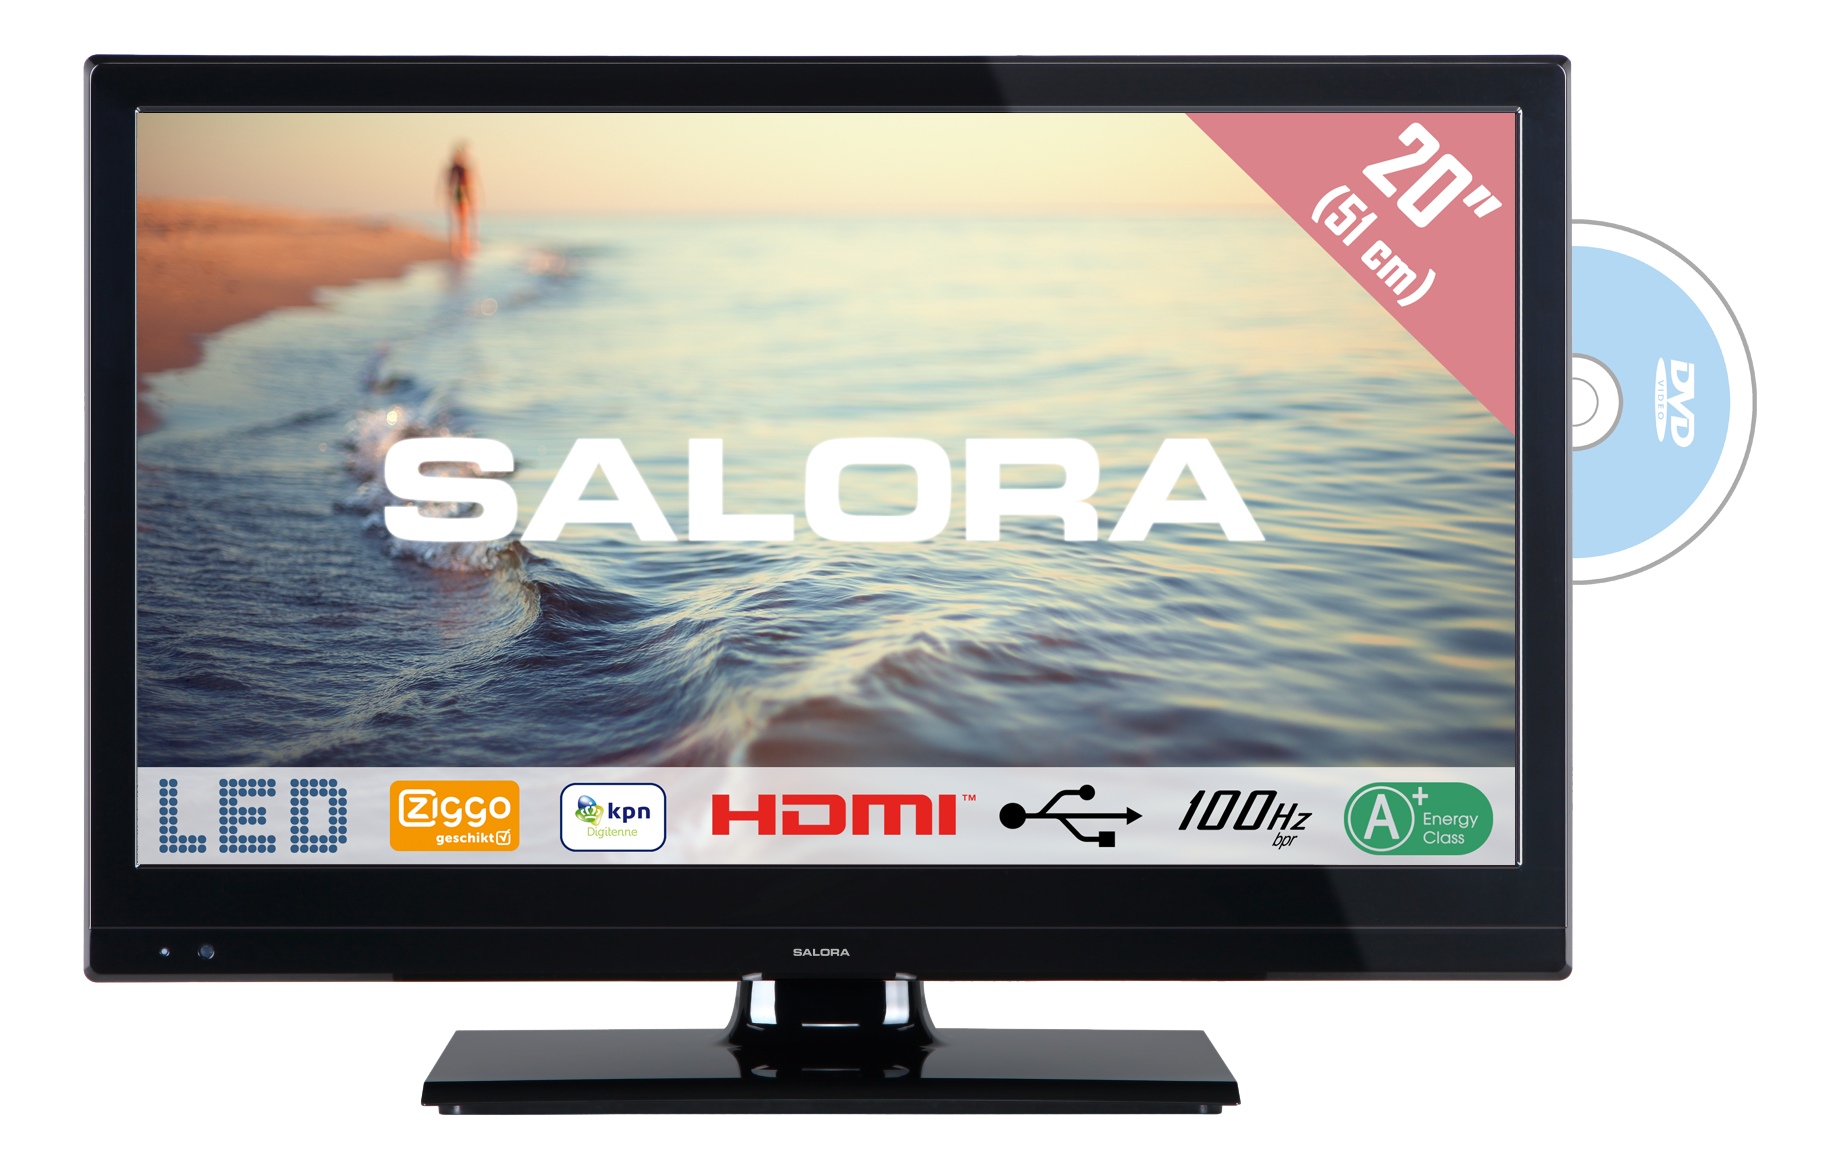 Salora 5000 series 20HDB5005 TV